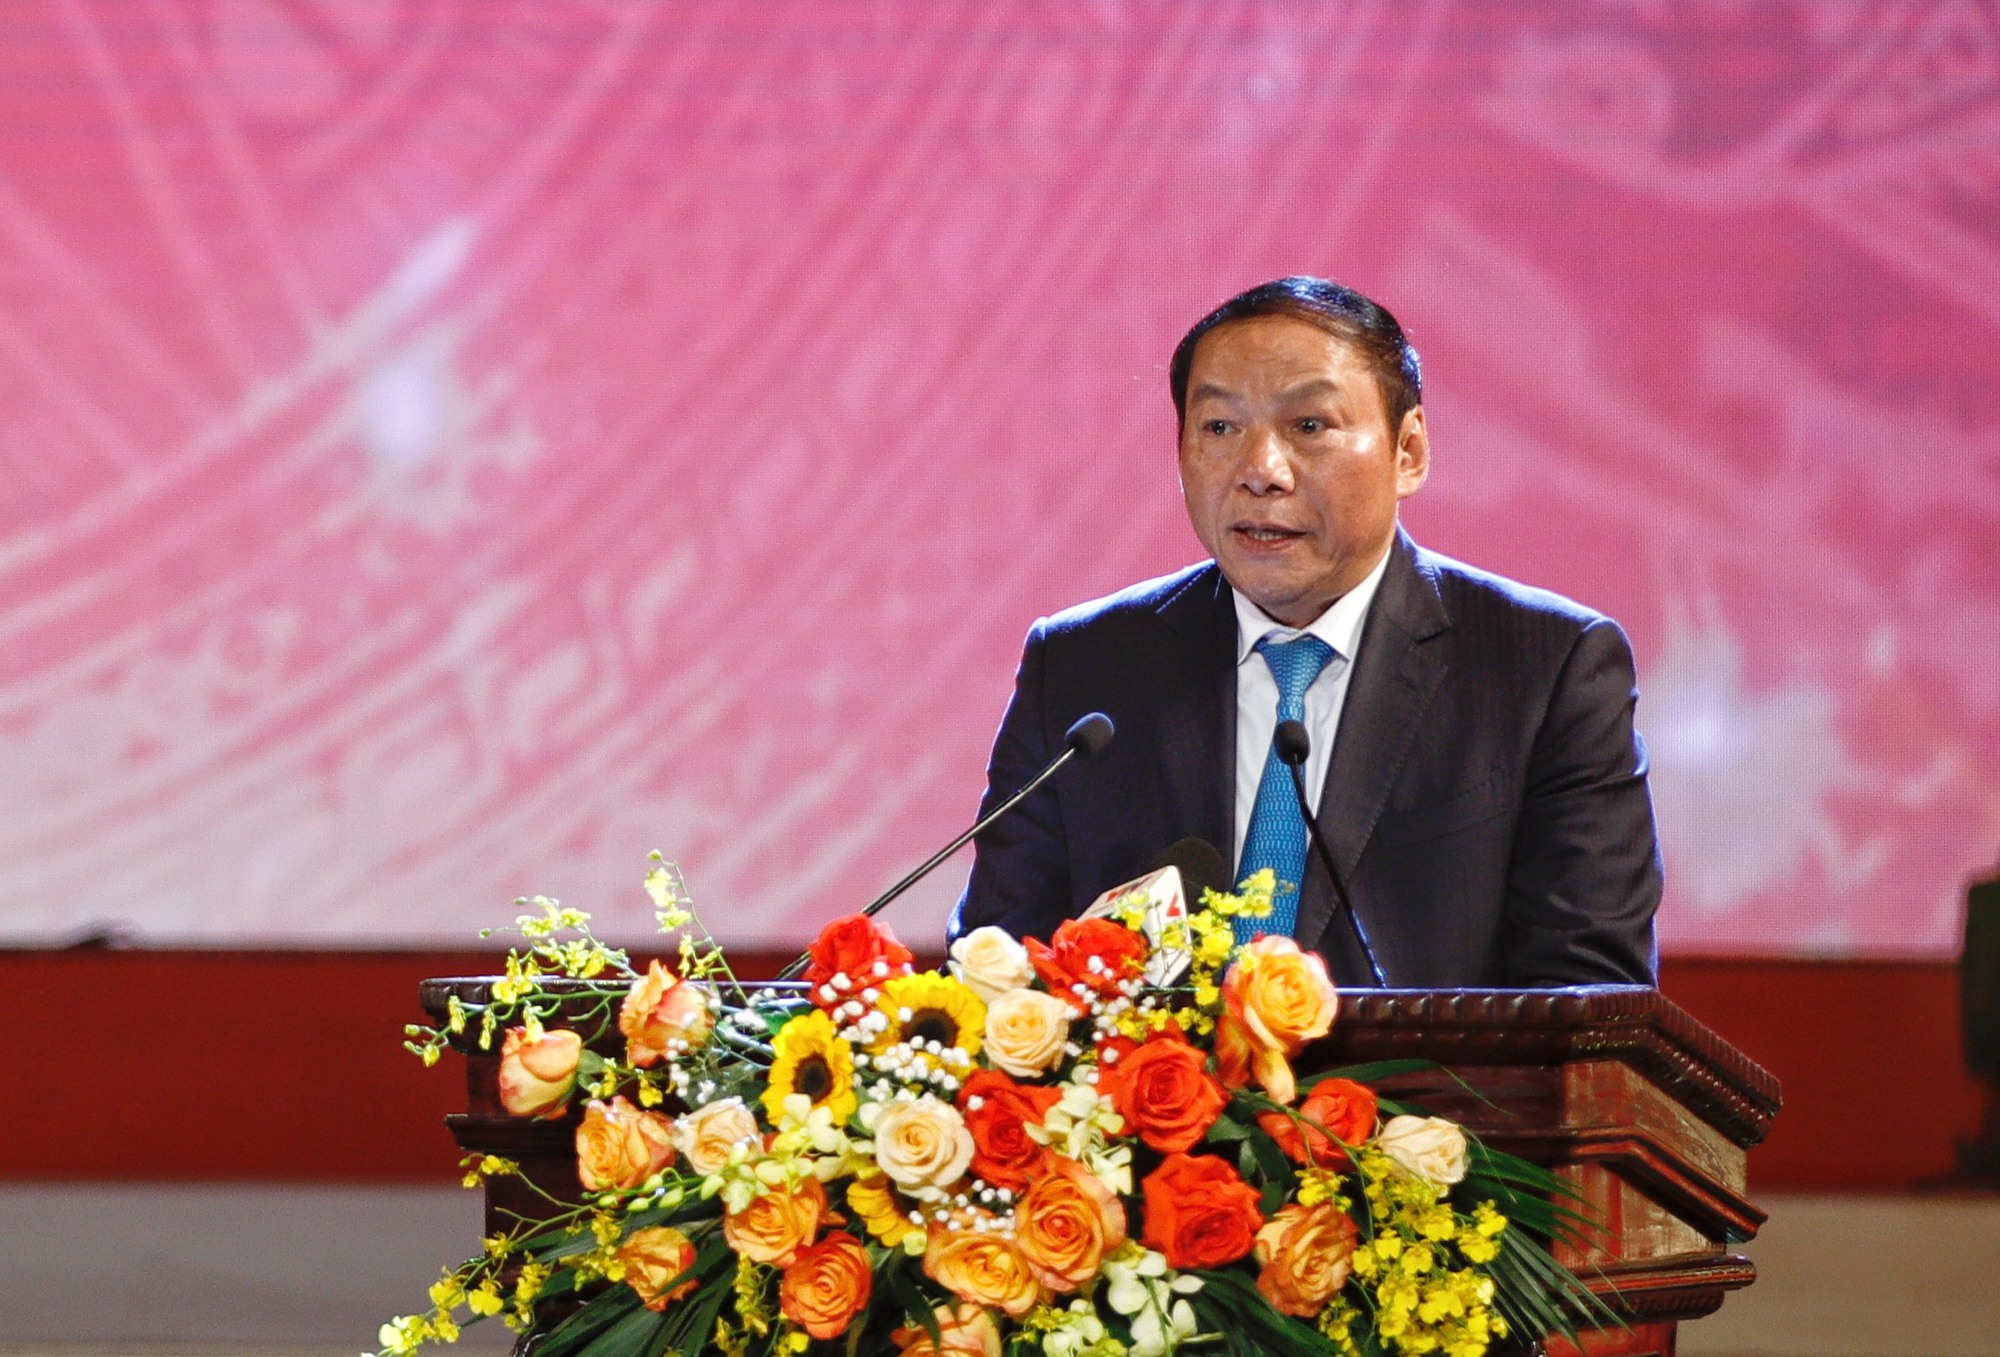 Toàn văn bài phát biểu của Bộ trưởng Nguyễn Văn Hùng tại Chương trình nghệ thuật "Đề cương về văn hoá Việt Nam – Những dấu ấn lịch sử"